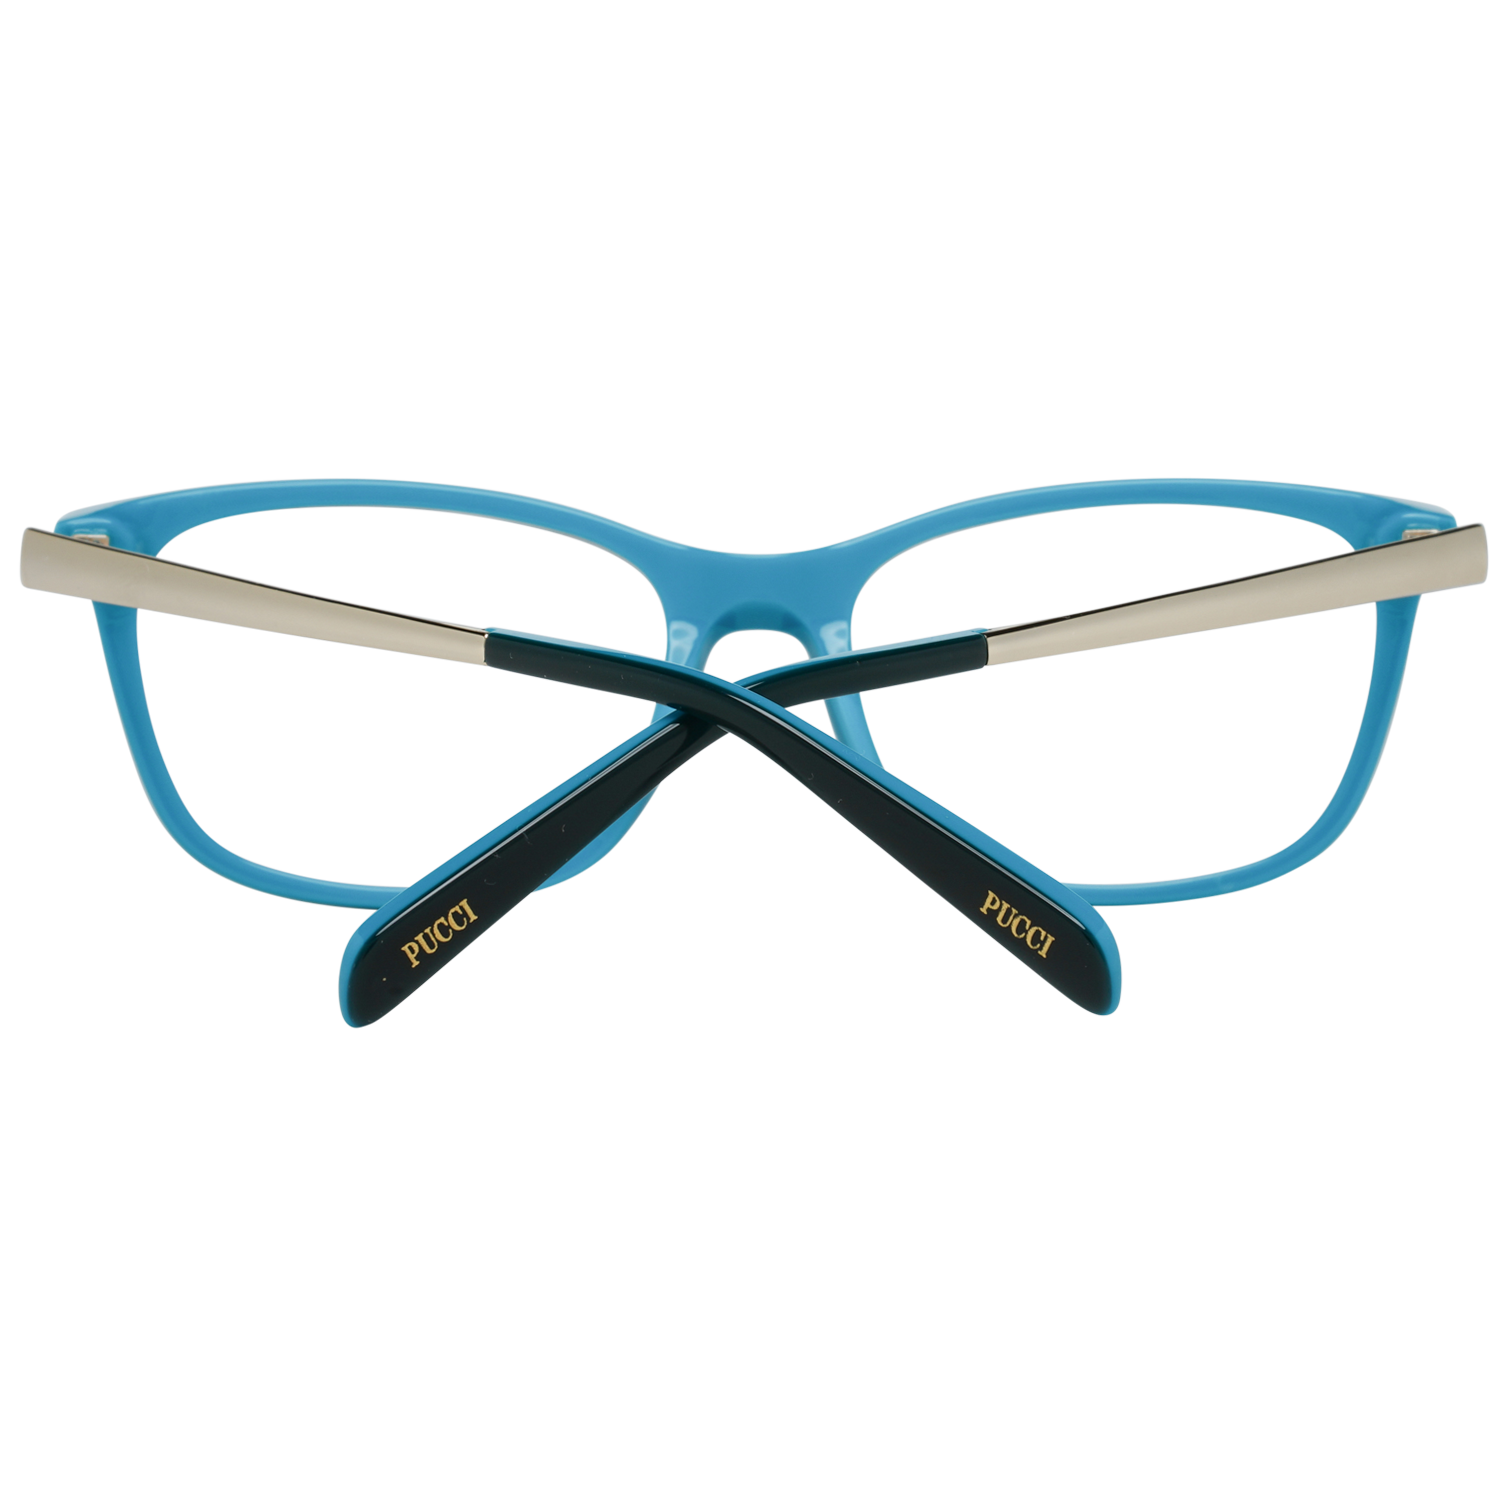 Emilio Pucci Frames Emilio Pucci Optical Frame EP5068 092 54 Eyeglasses Eyewear UK USA Australia 